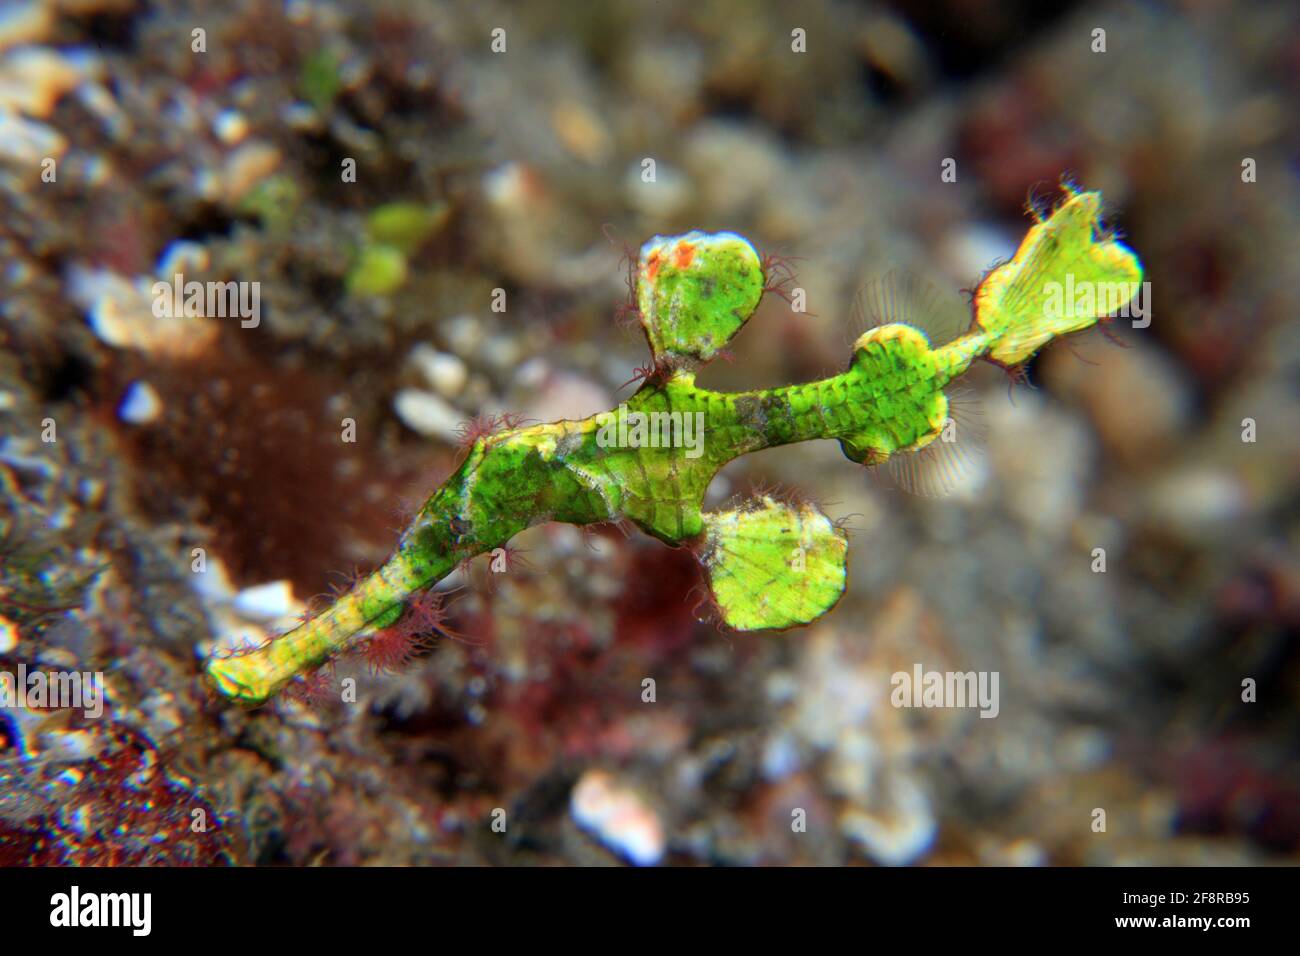 Halimeda Geisterpfeifenfisch (Solenostomus halimeda), (Lembeh) - Halimeda ghostpipefish (Lembeh, Indonesia) Stock Photo